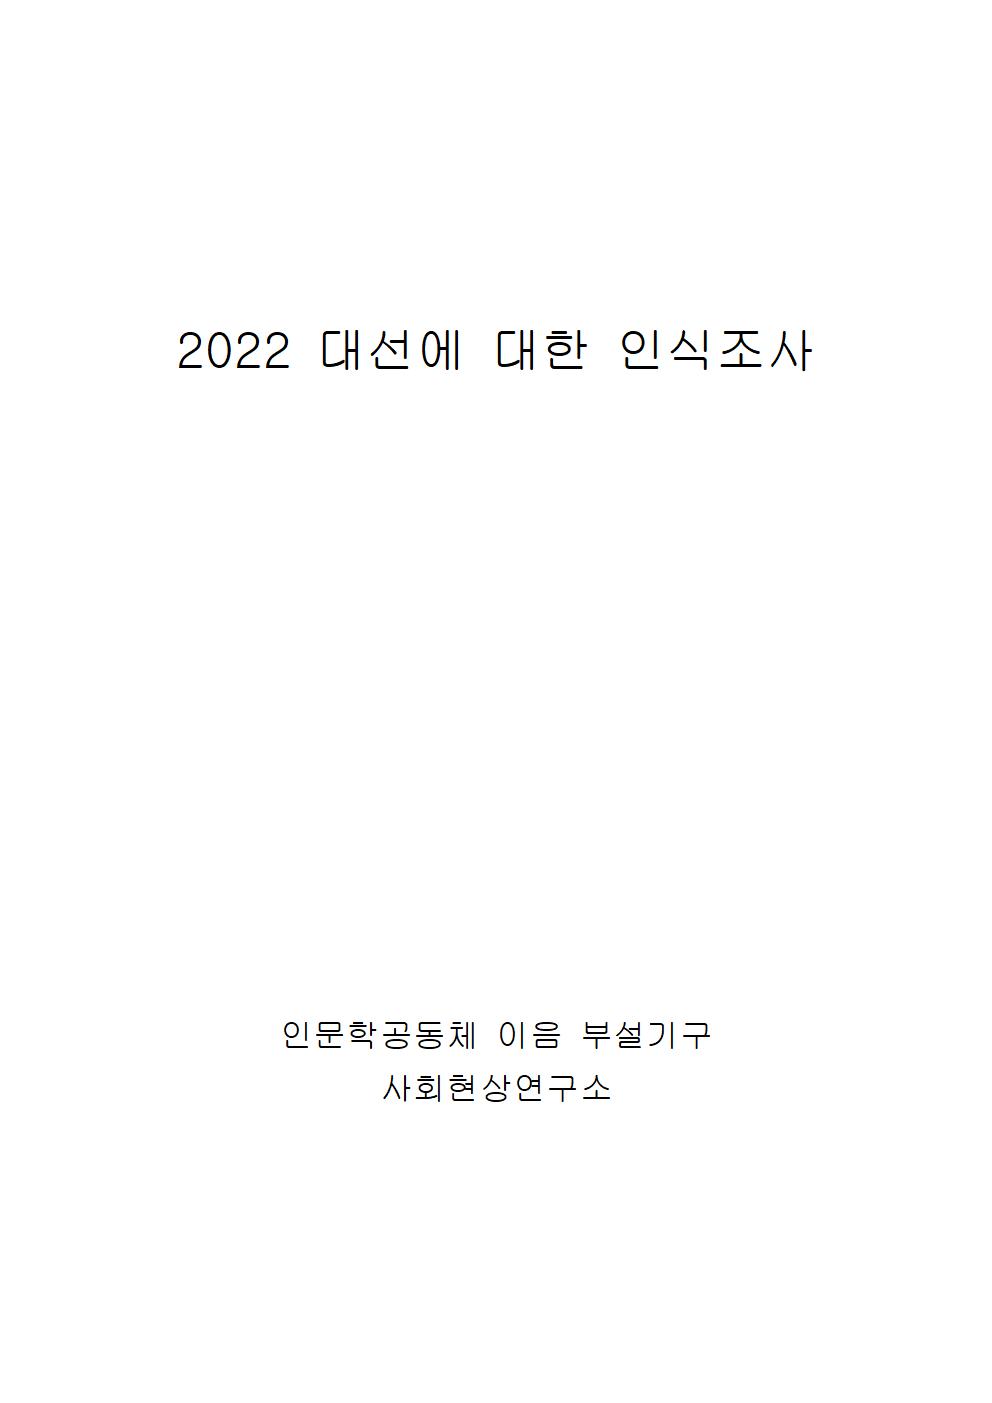 2022 대선에 대한 인식조사001.jpg